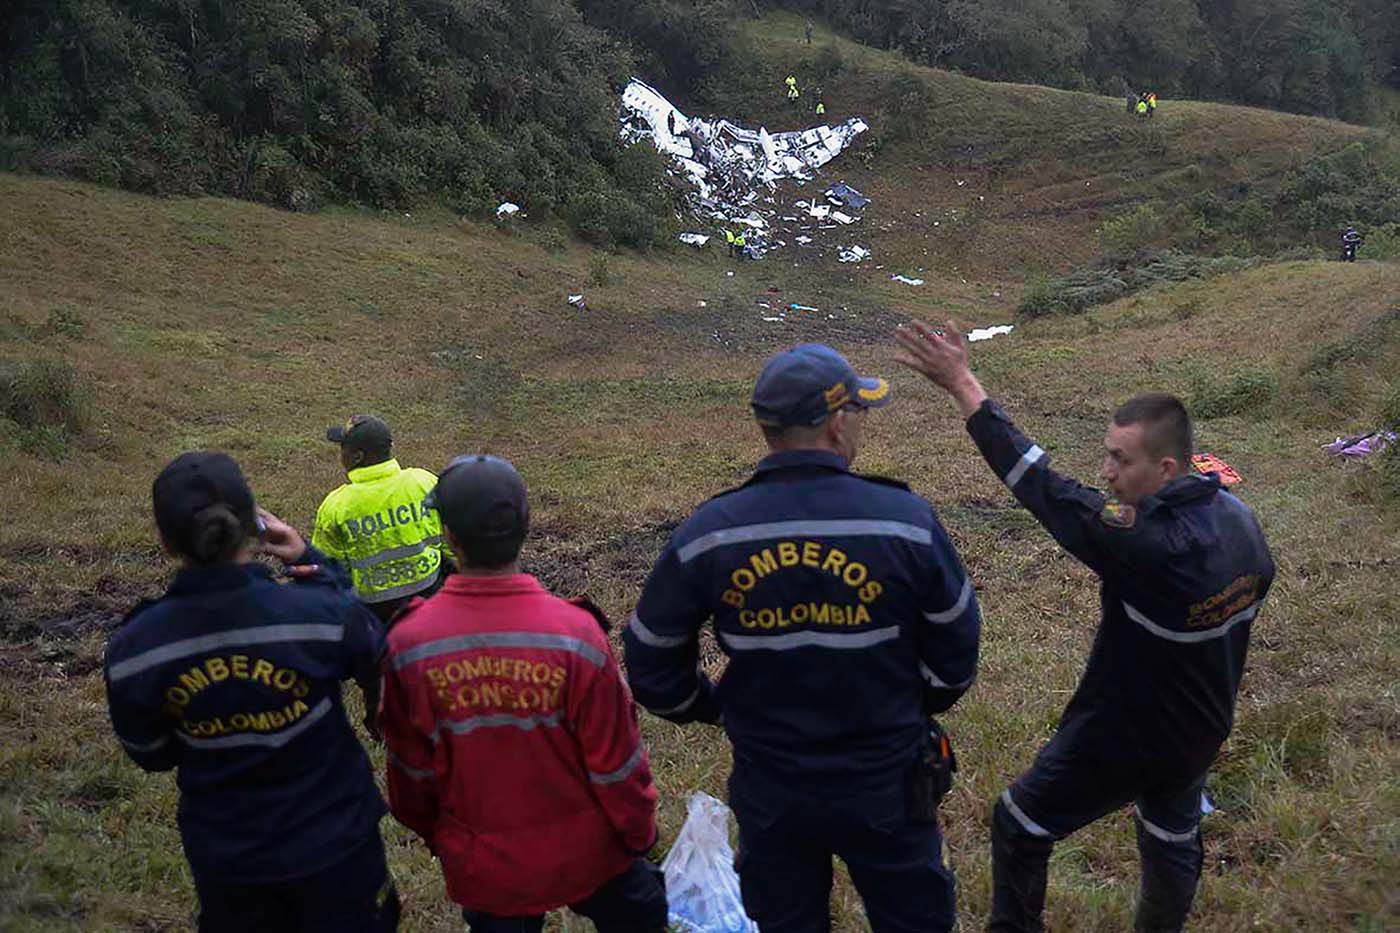 Expertos británicos en aviación investigarán las cajas negras del avión que se estrelló en Colombia